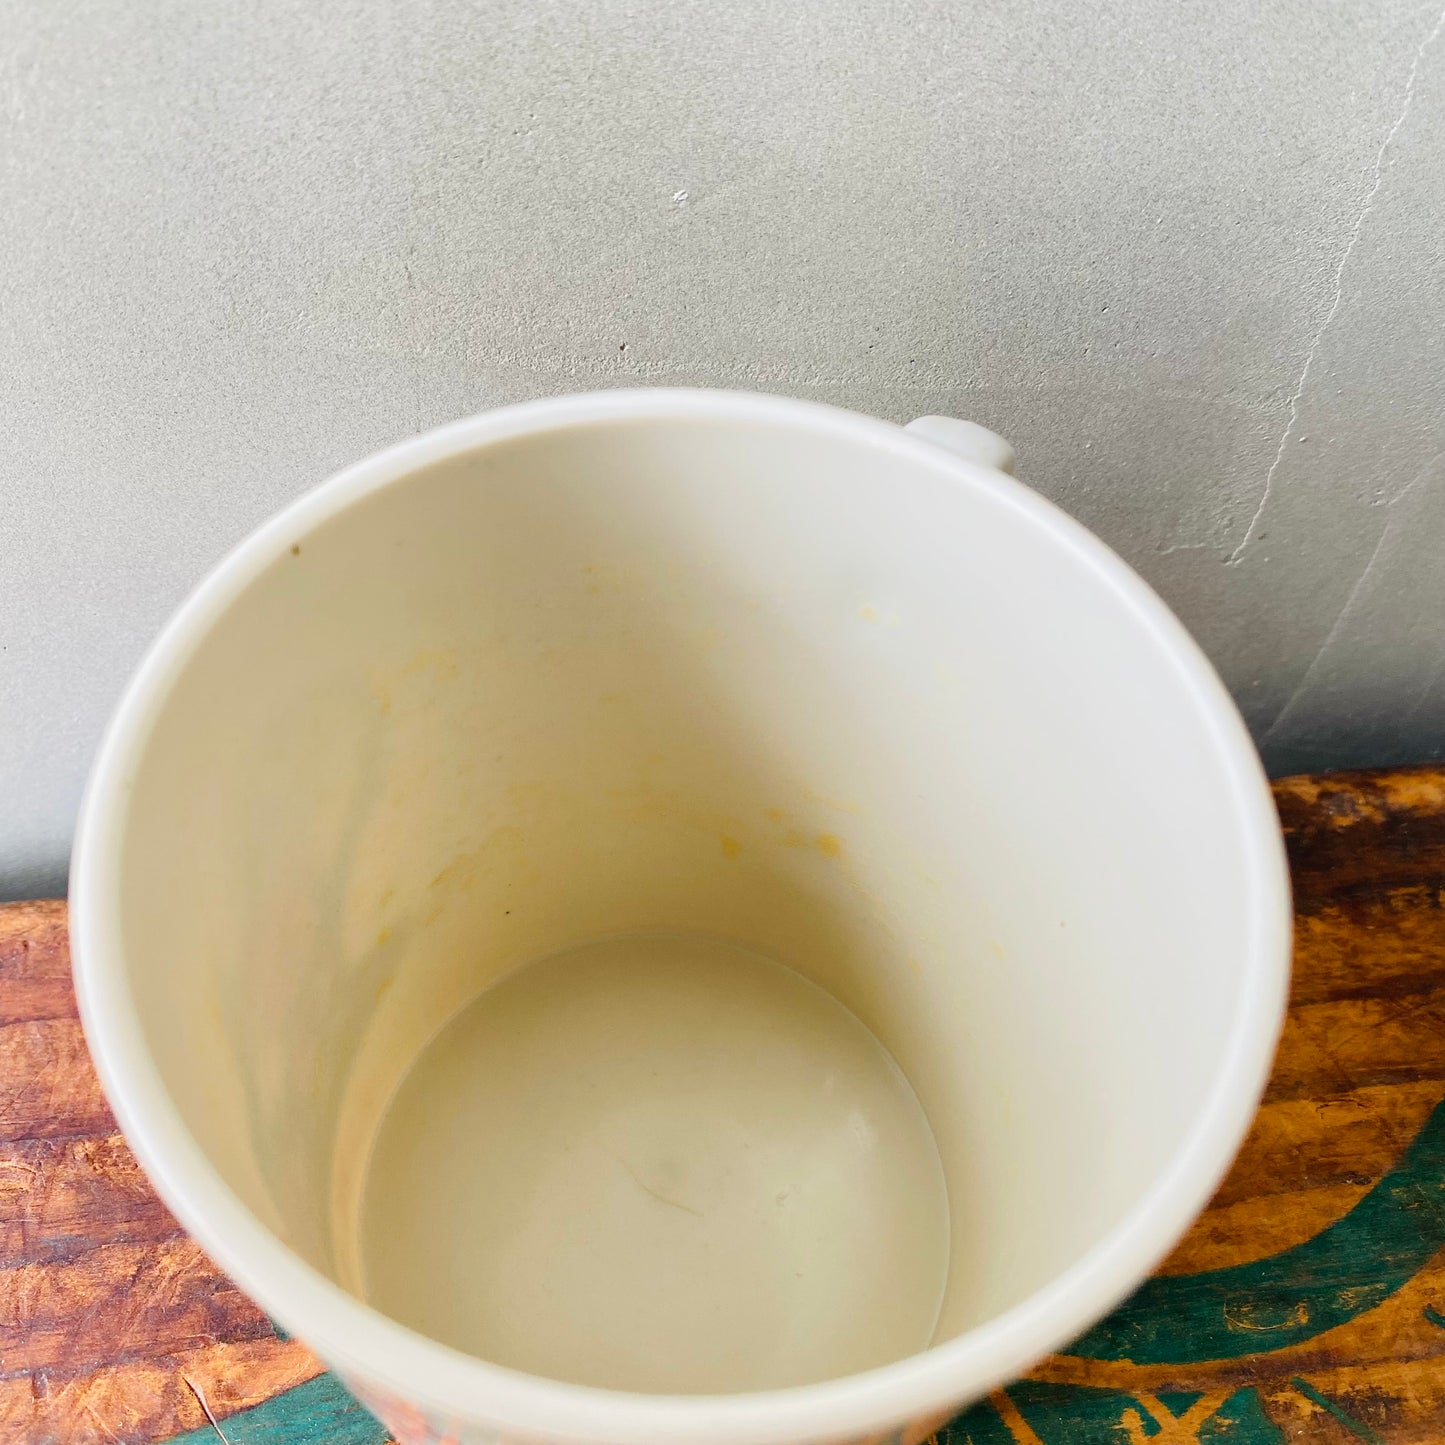 【vintage】plastics mug GRANDMA